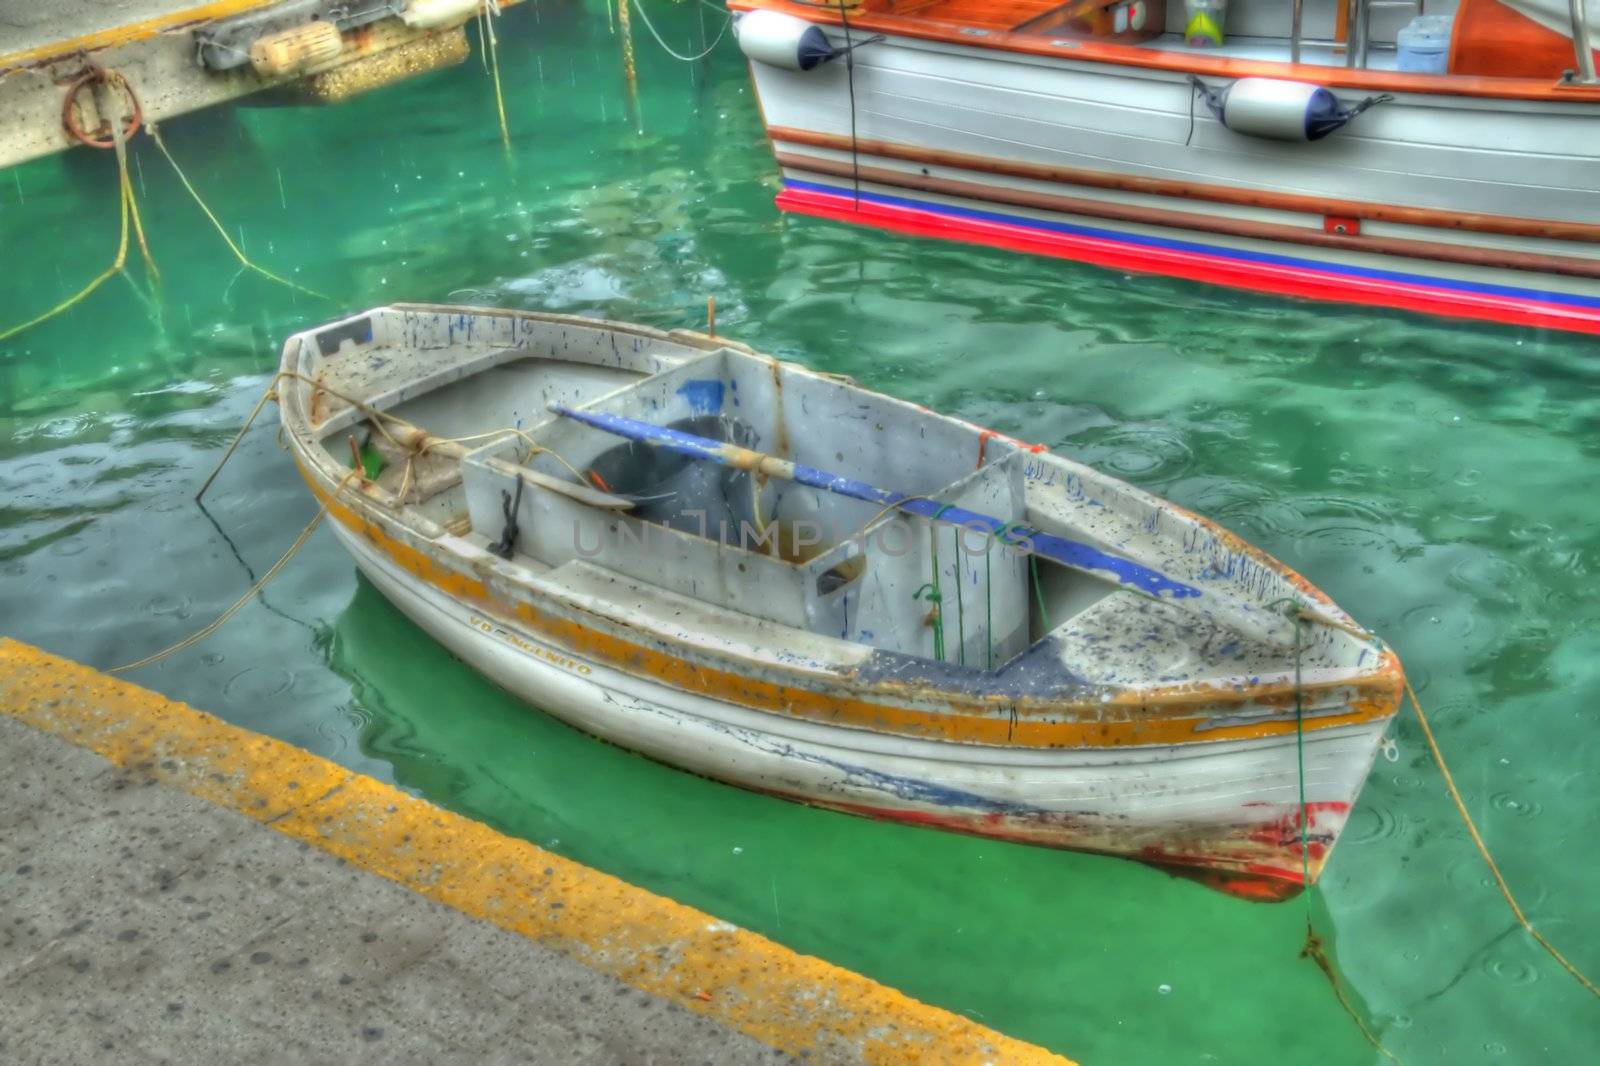 Italian Row Boat by jasony00